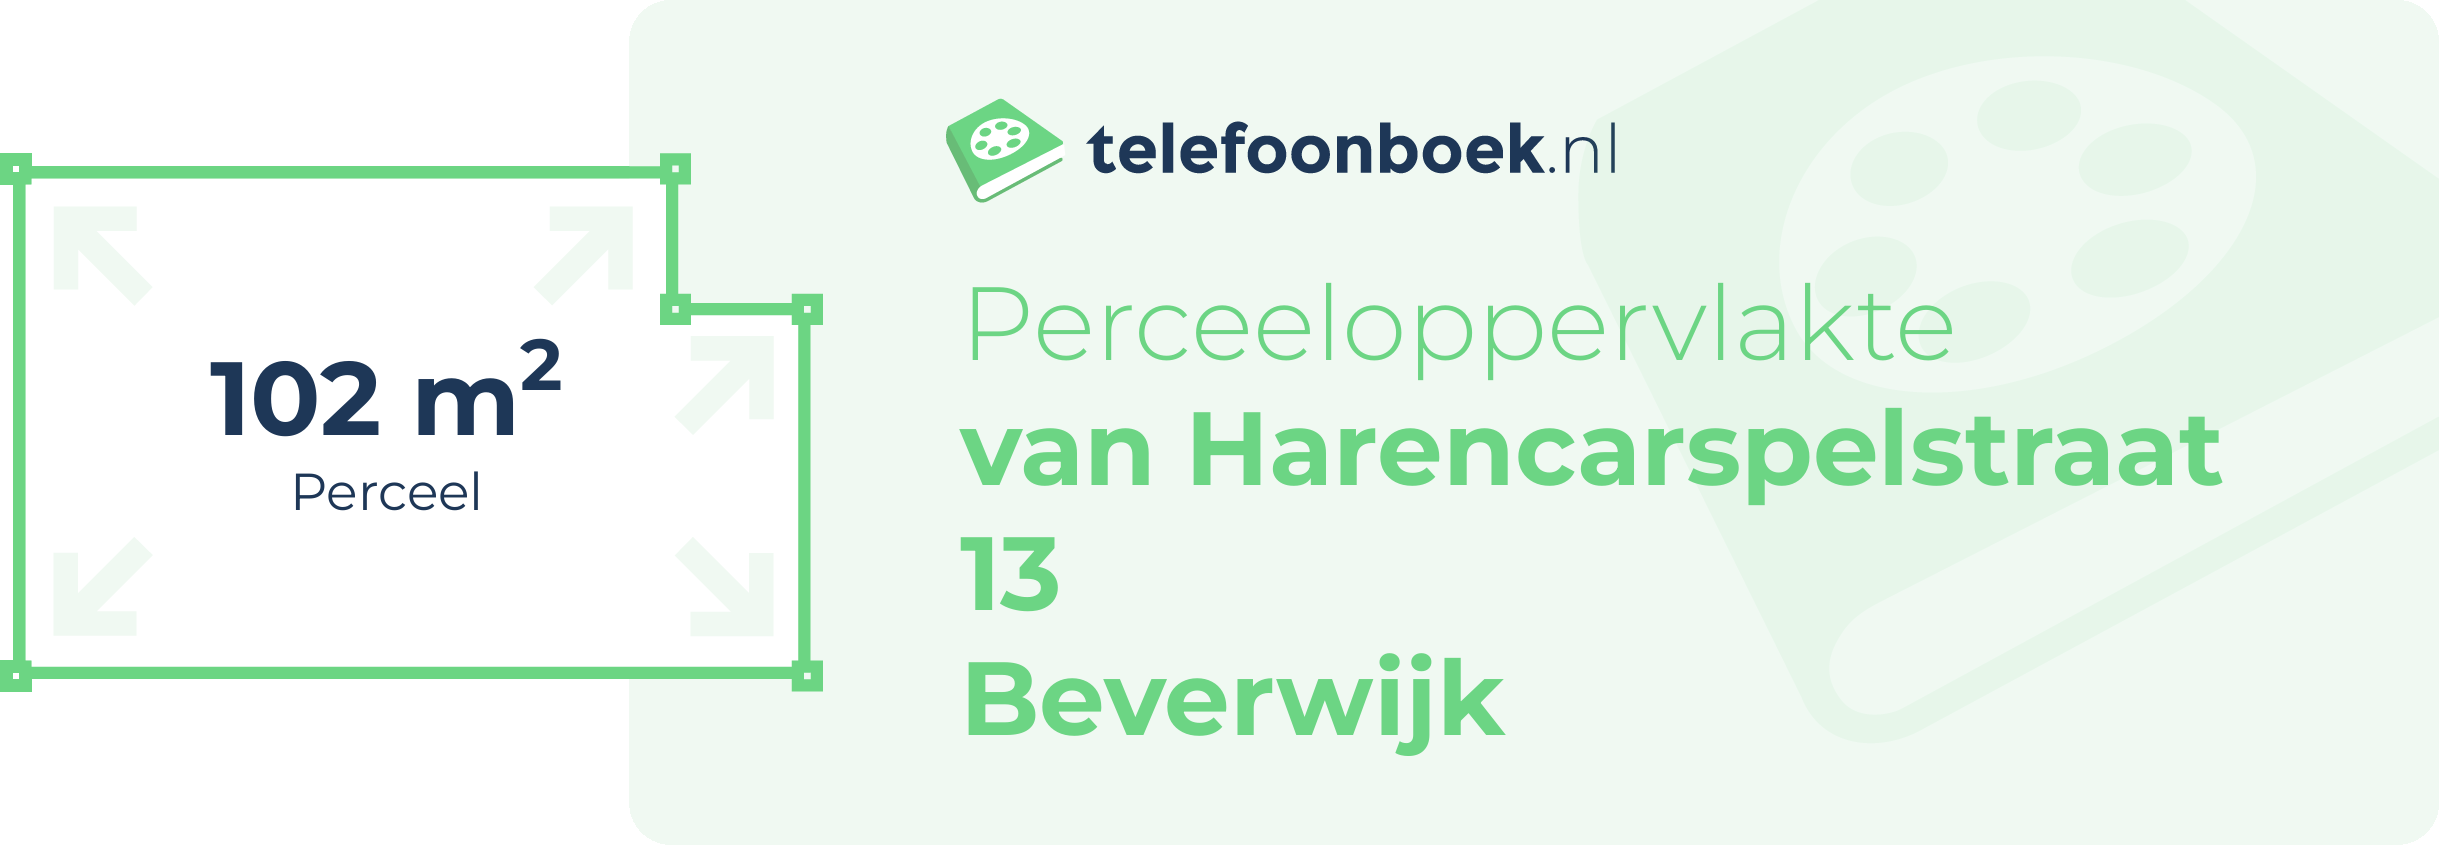 Perceeloppervlakte Van Harencarspelstraat 13 Beverwijk